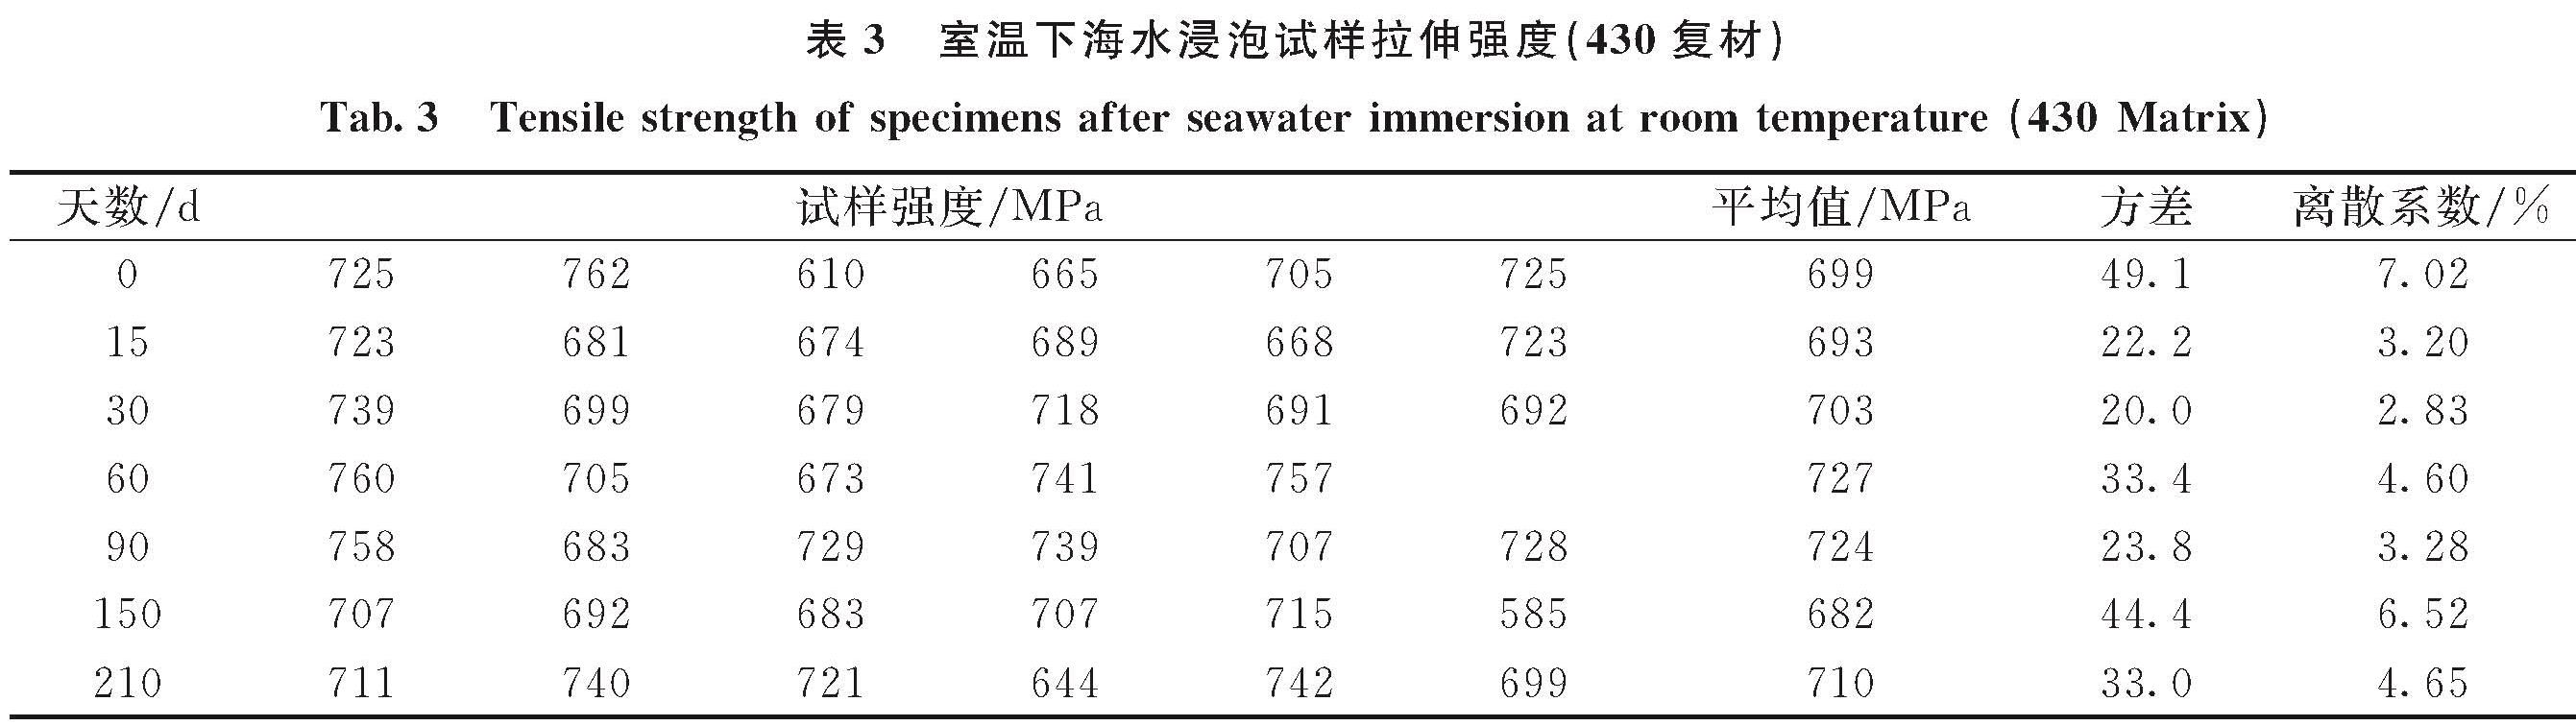 表3 室温下海水浸泡试样拉伸强度(430复材)<br/>Tab.3 Tensile strength of specimens after seawater immersion at room temperature(430 Matrix)